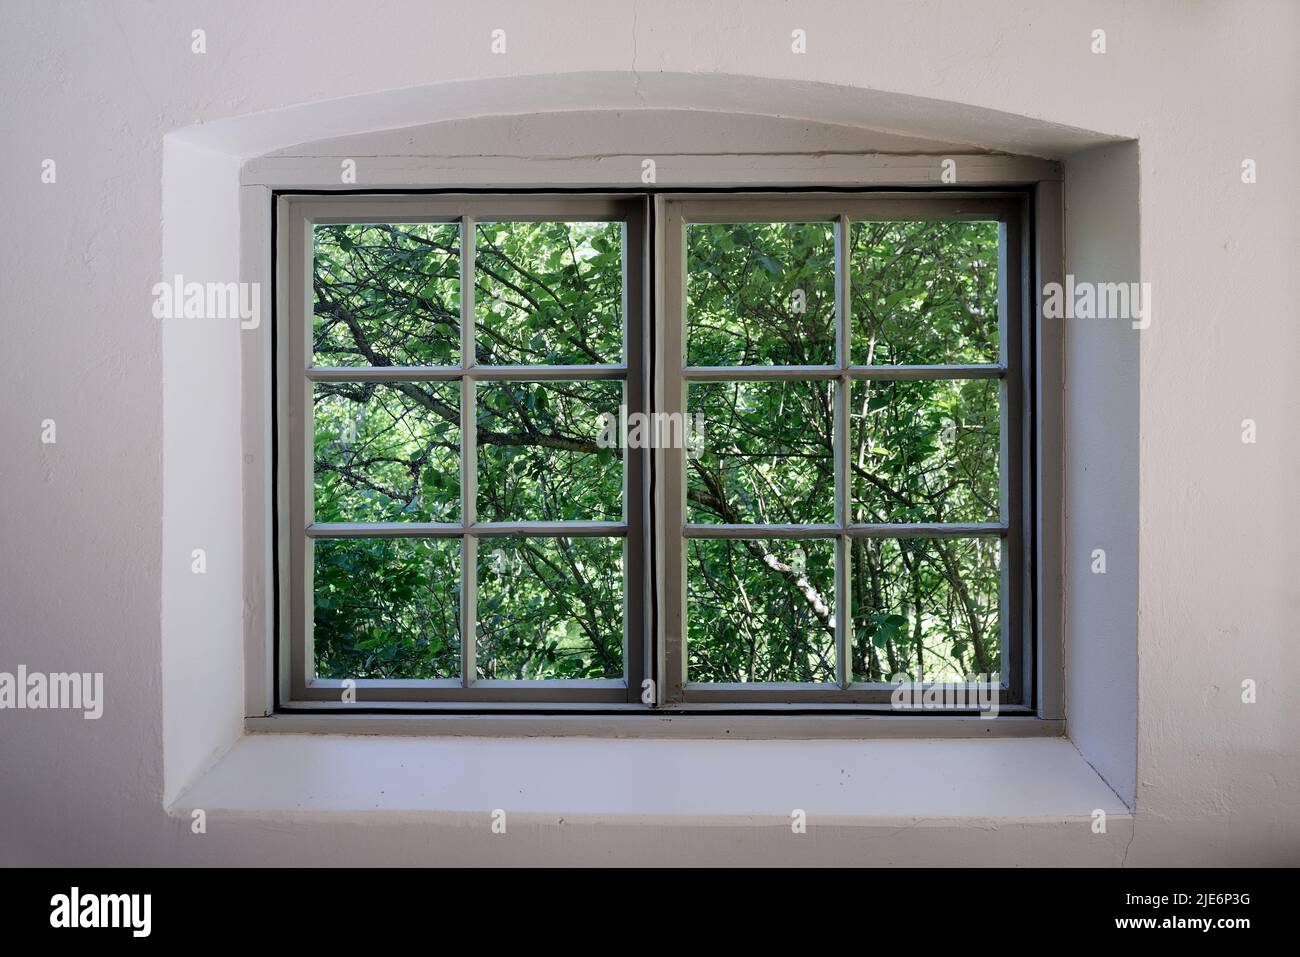 vista desde la ventana antigua al jardín, follaje verde y ramas Foto de stock